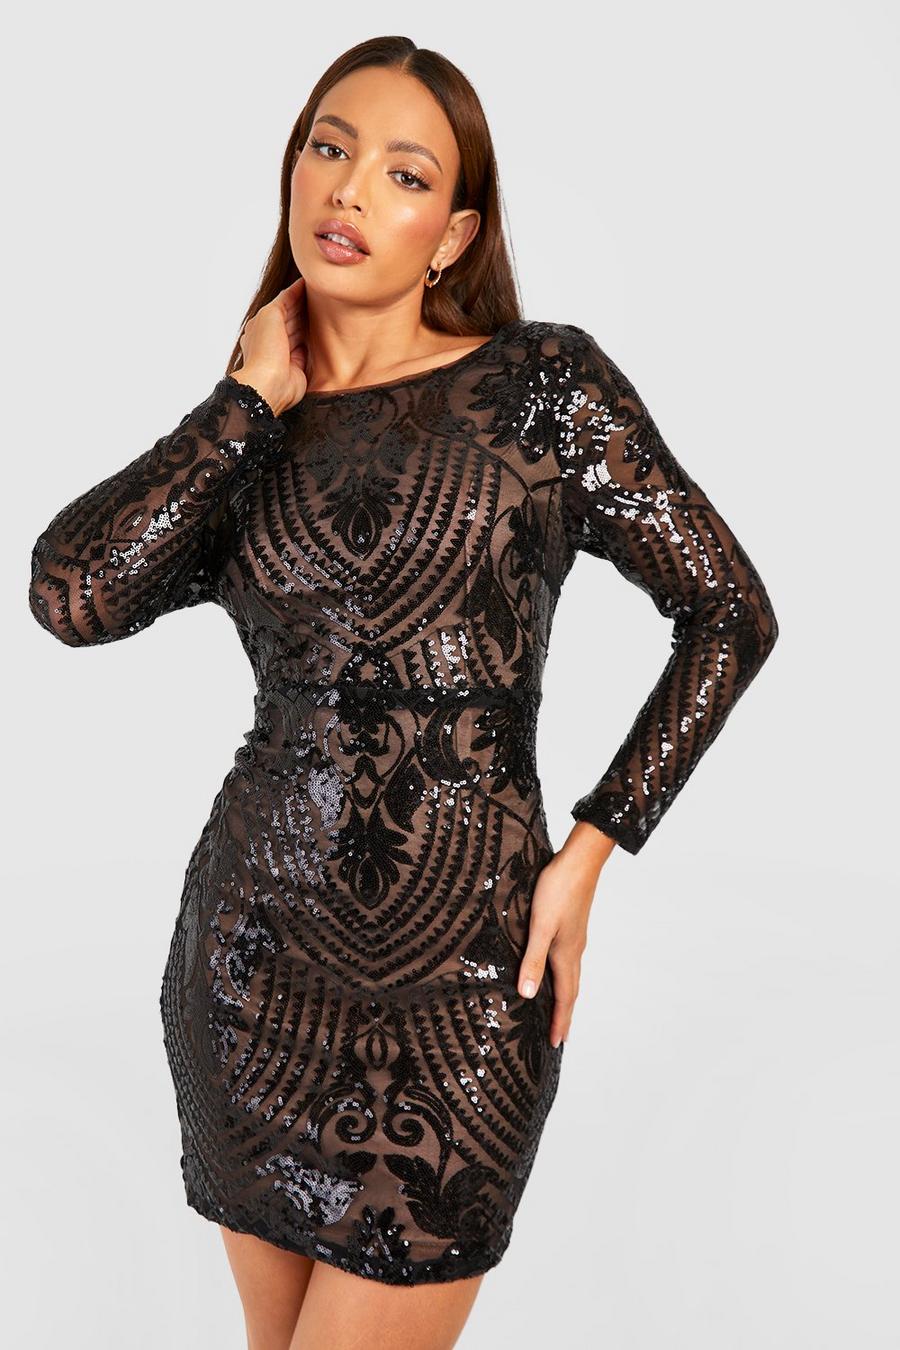 שחור שמלת מיני מבד דמשק עם פייטים ומחשוף גב נשפך, לנשים גבוהות